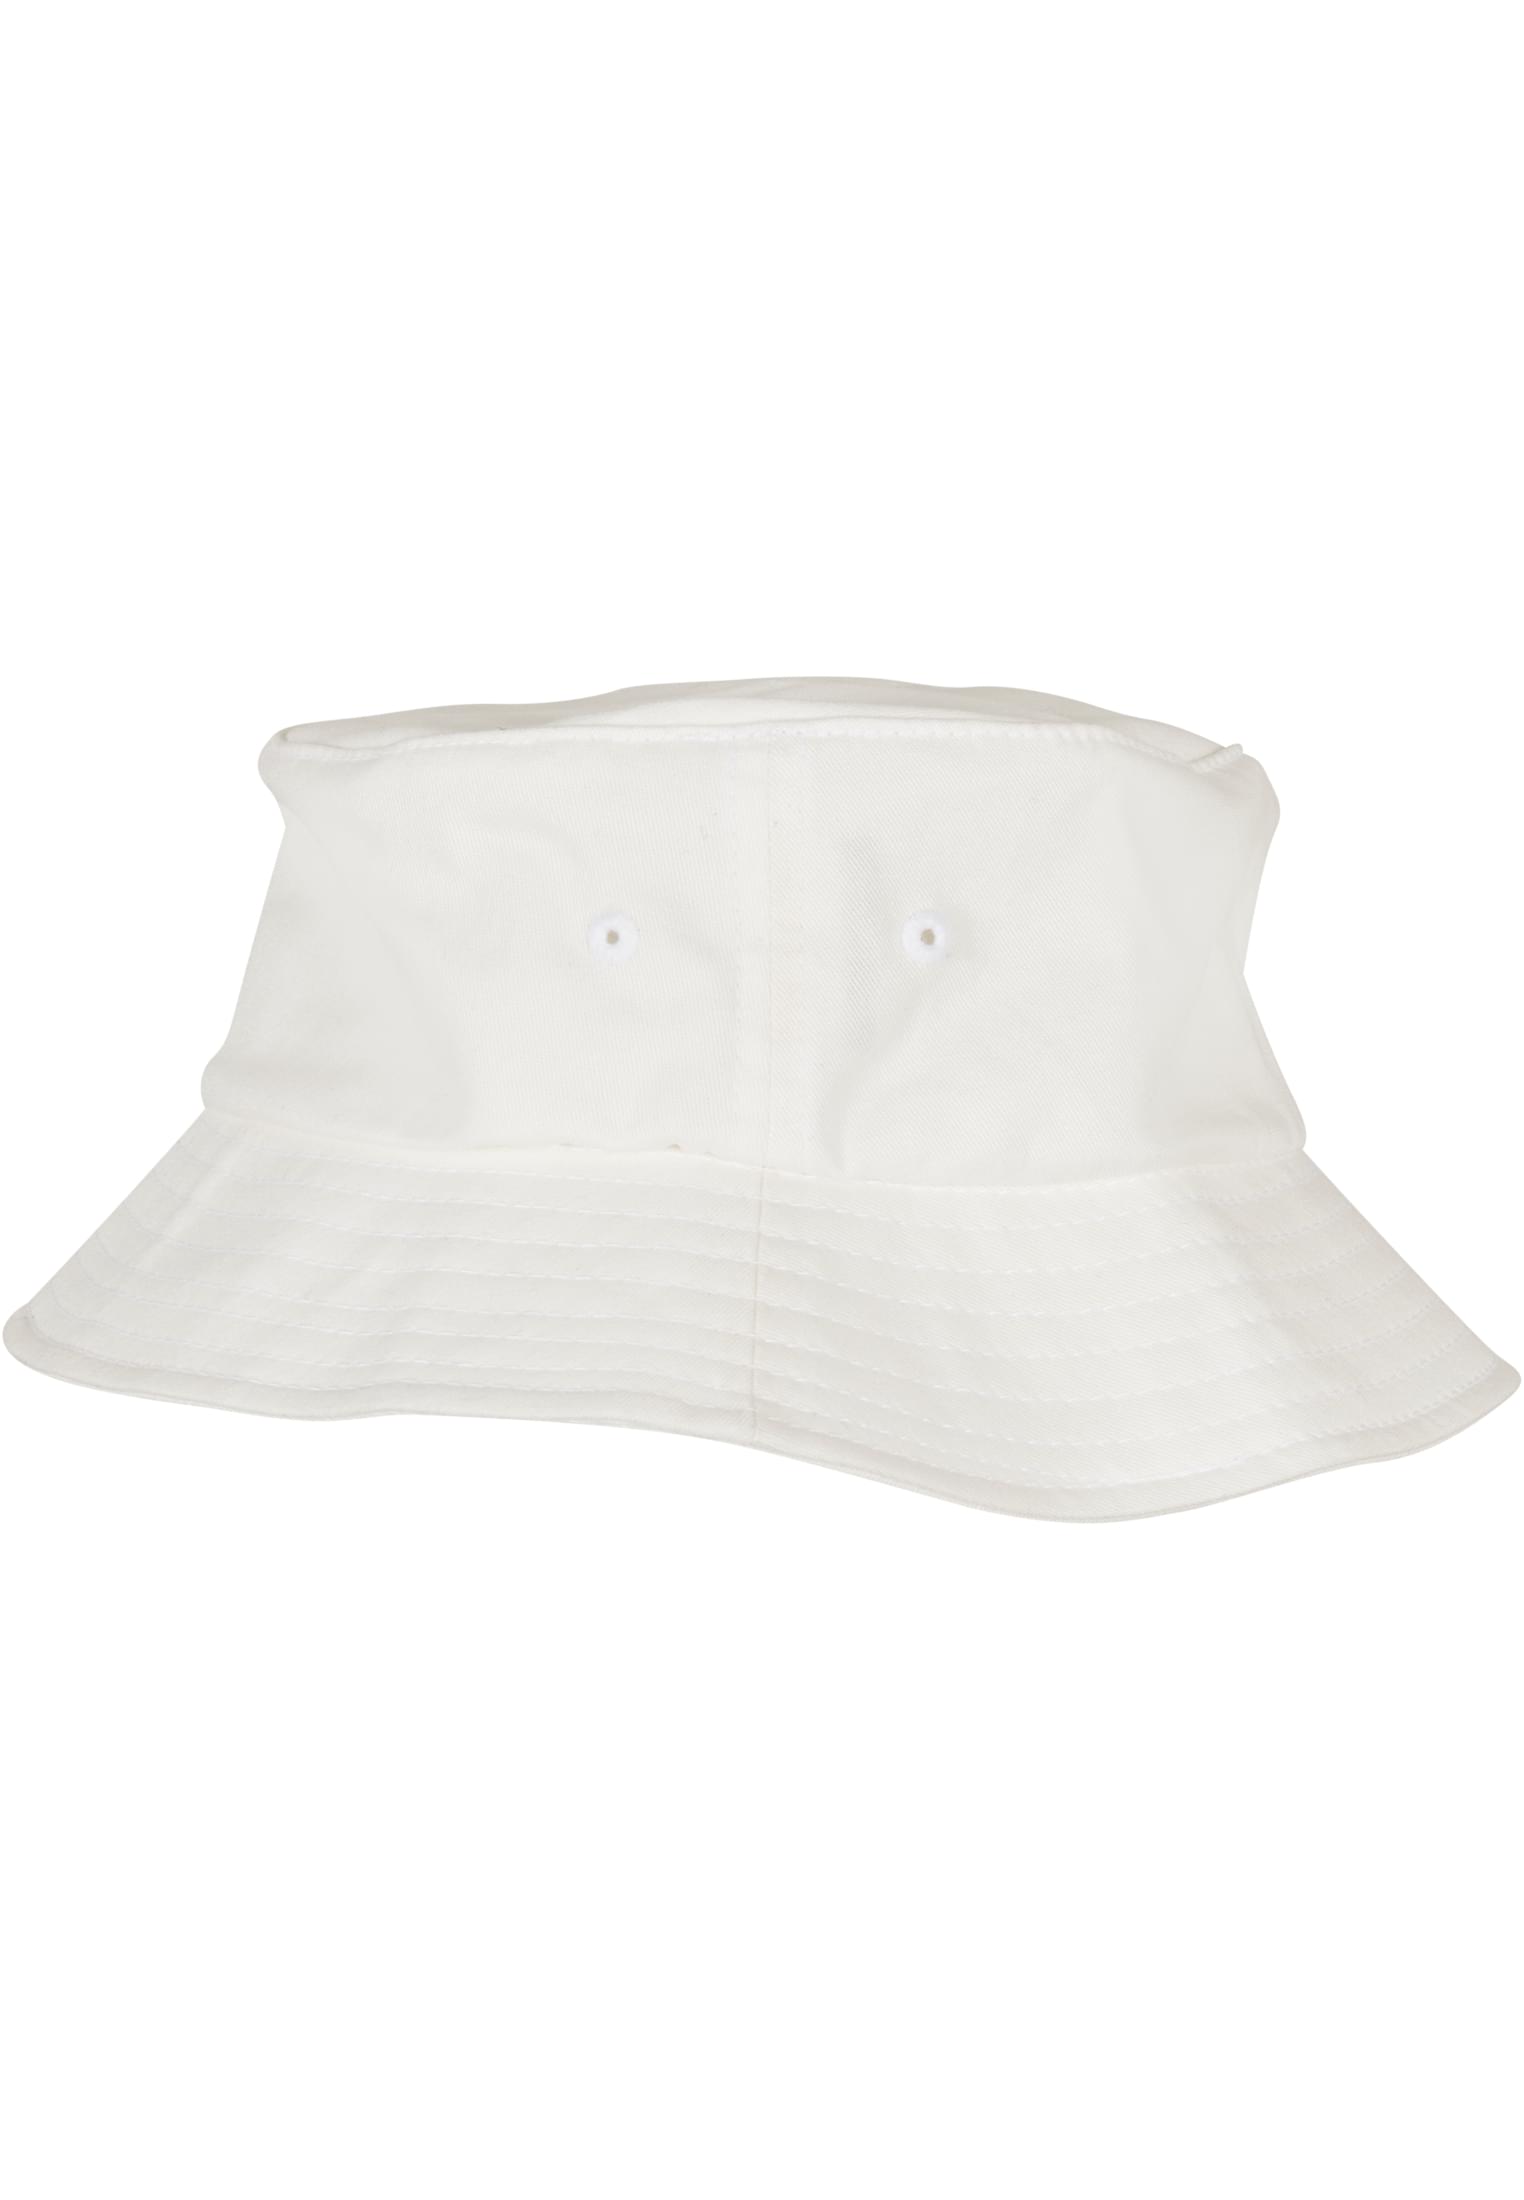 Kids Flexfit Cotton Twill Bucket Hat Kids in Farbe white